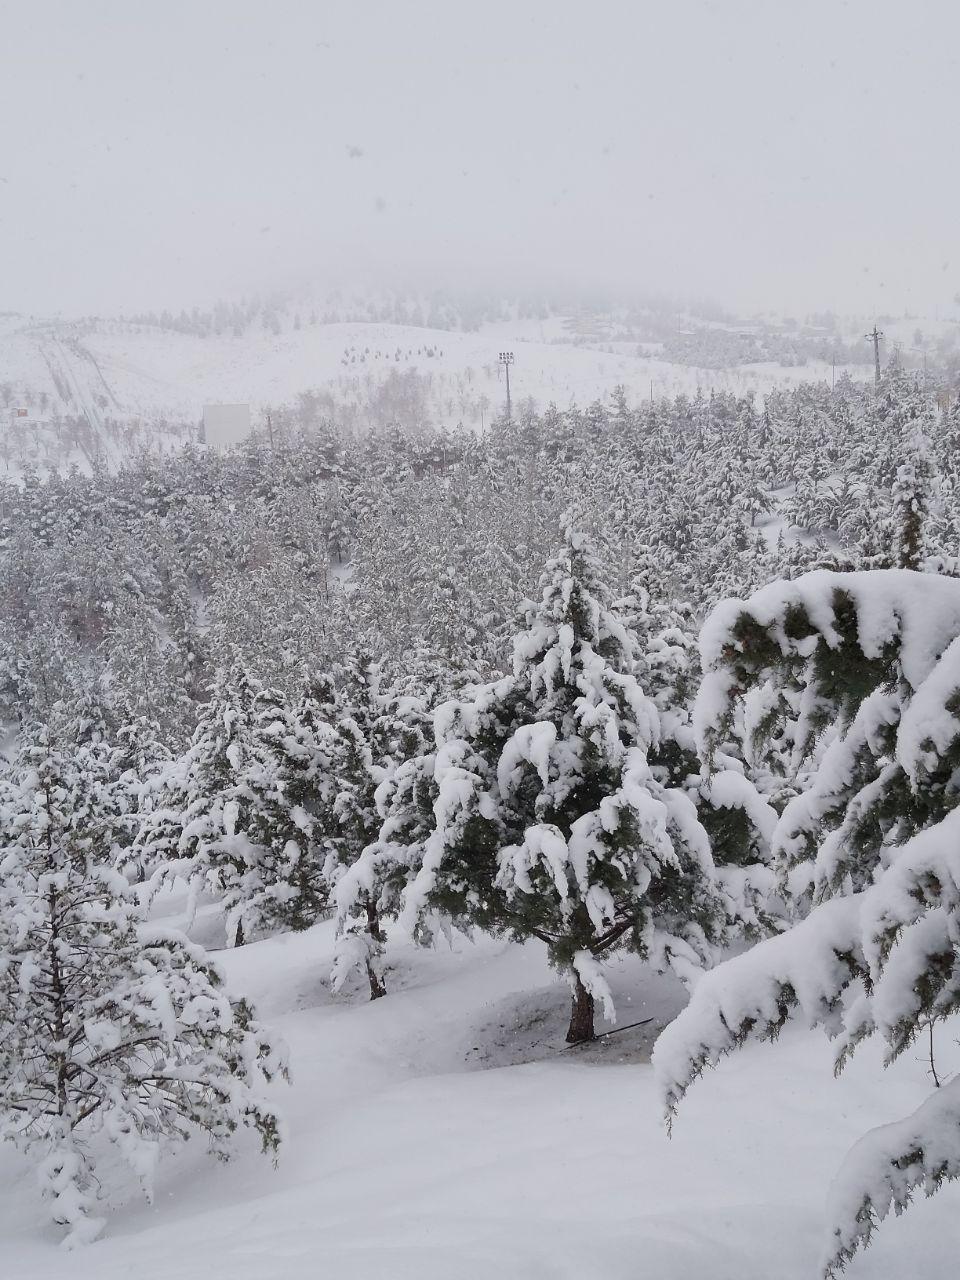 عکسی جالب از یک روز برفی در بوستان ملی باراجین قزوین